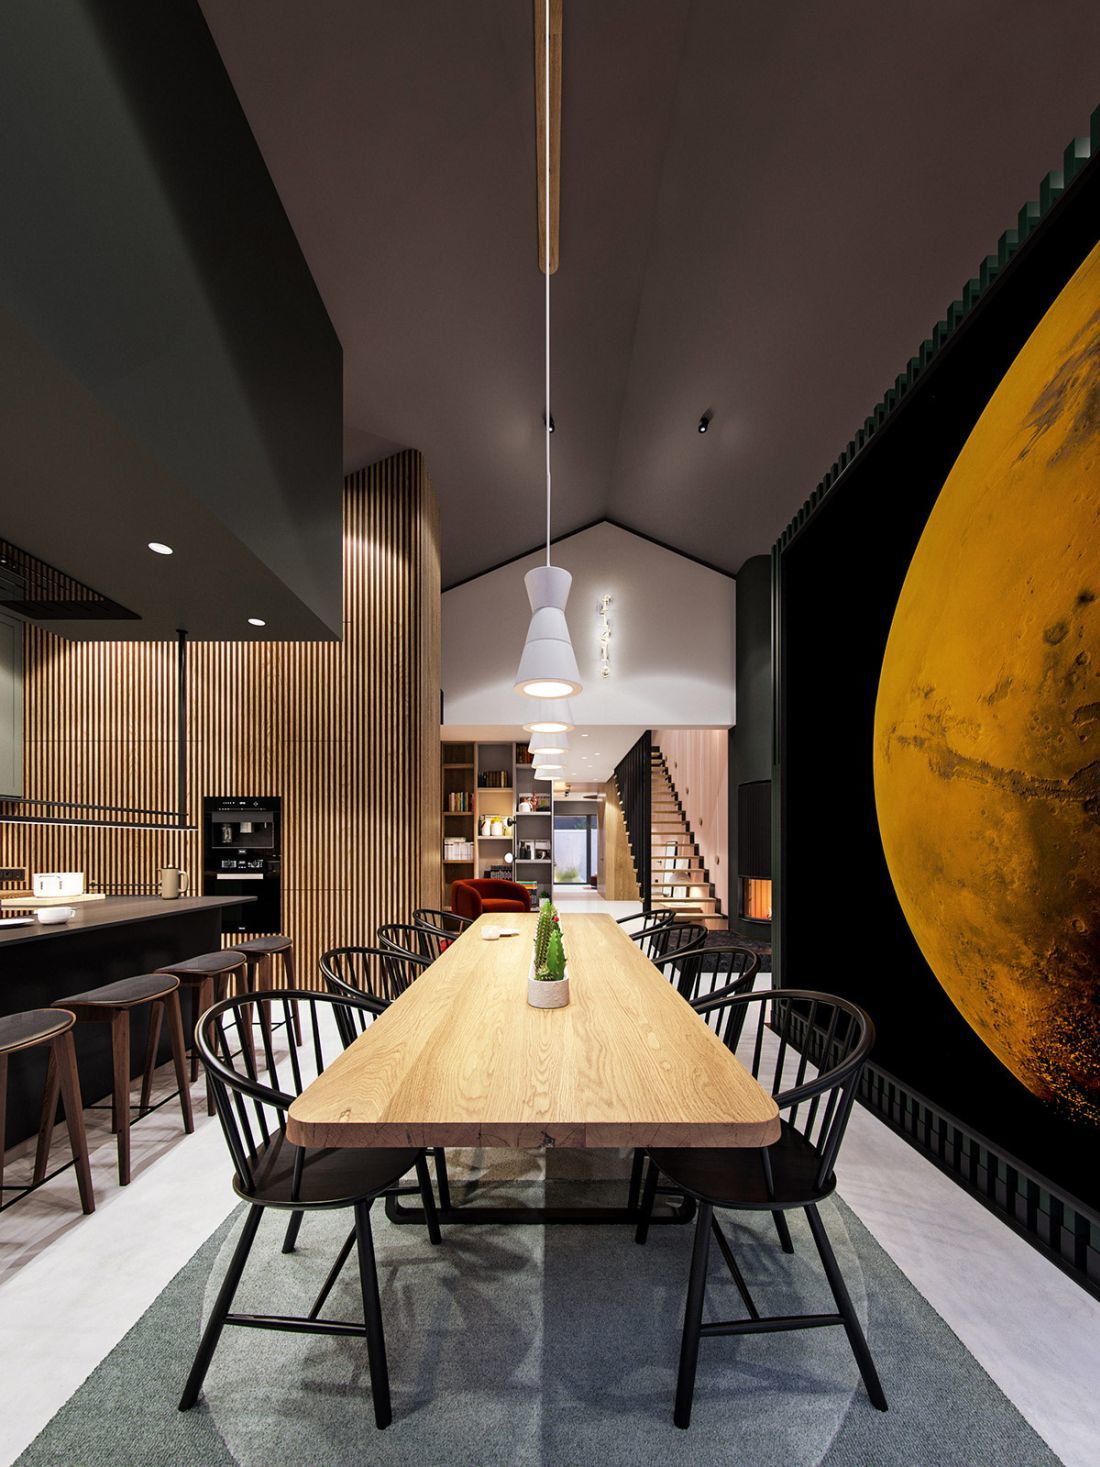 Nagy, Holdat ábrázoló poszter az étkezőben